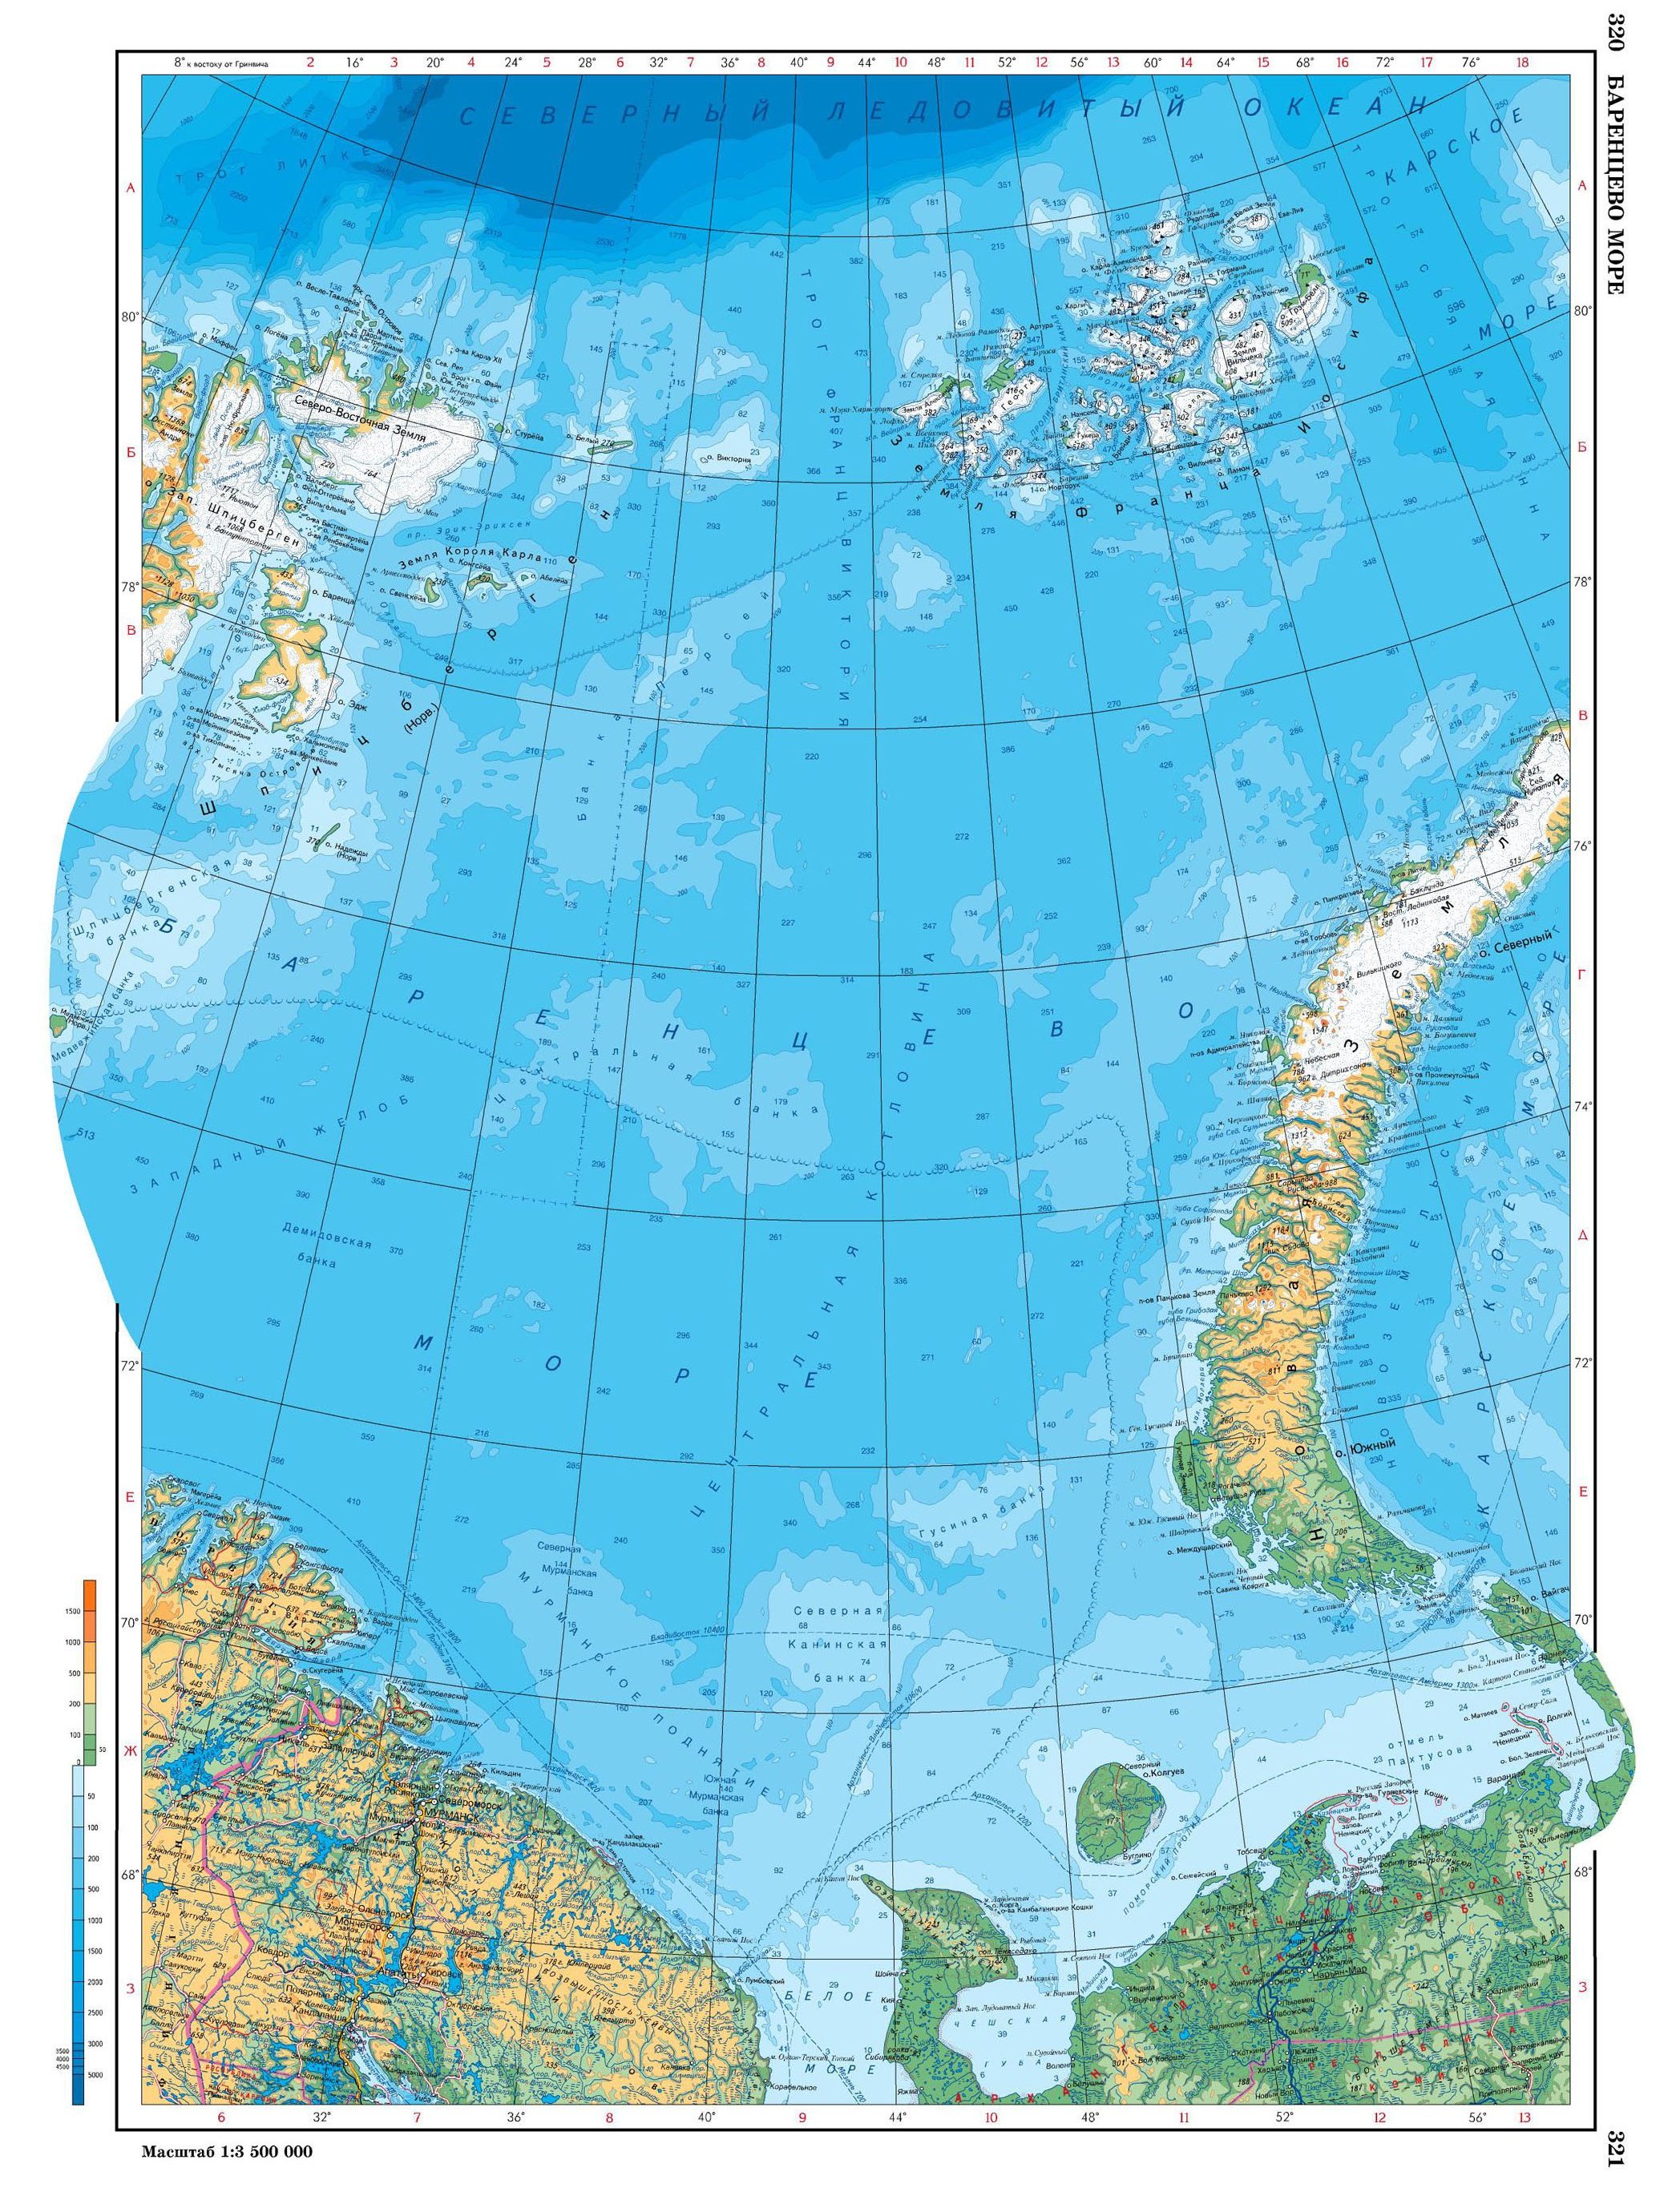 баренцево море на карте россии